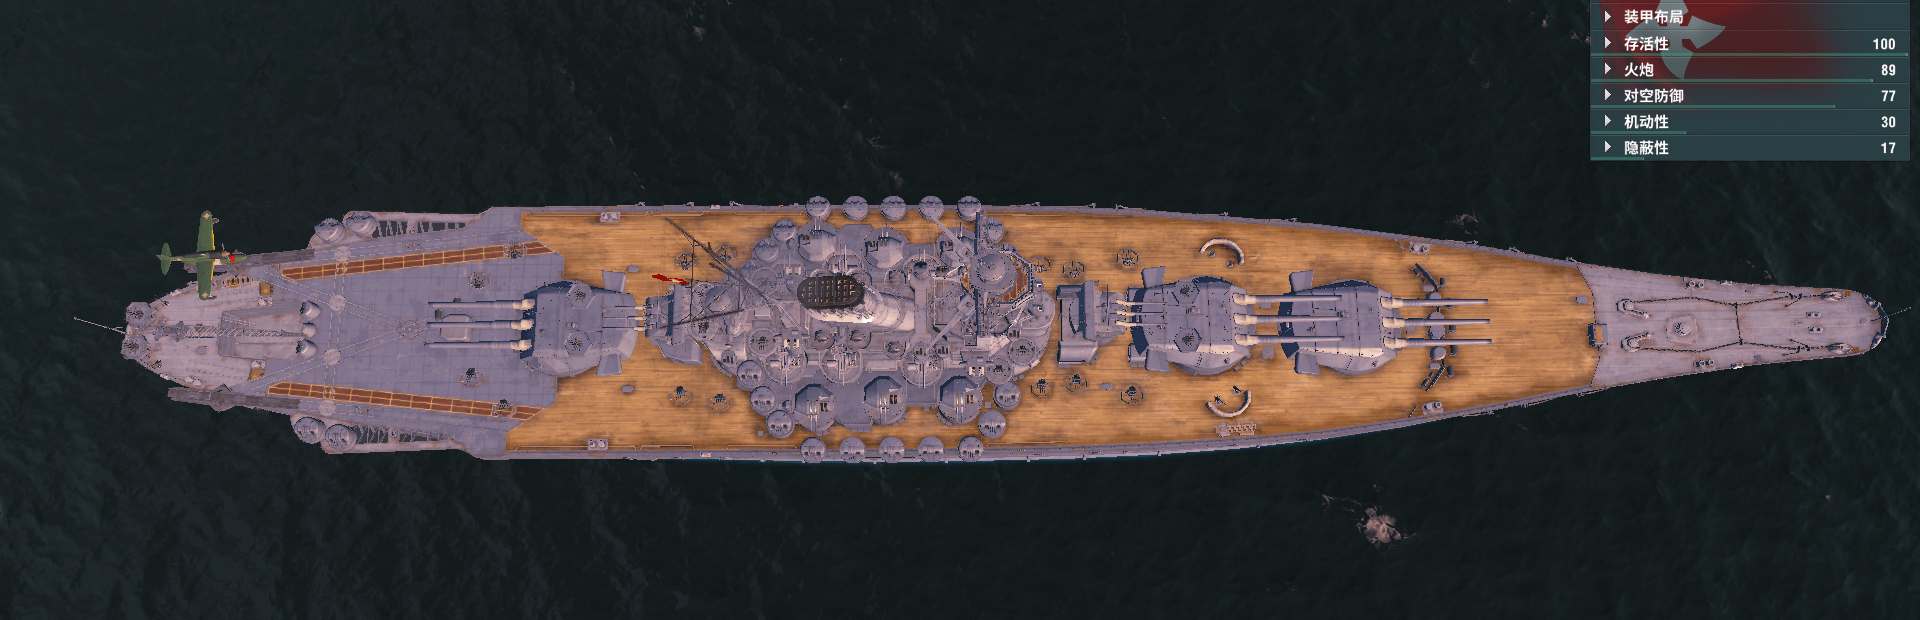 日本建造的世界最大口径主炮的战列舰却沦为了高级军官的休息室